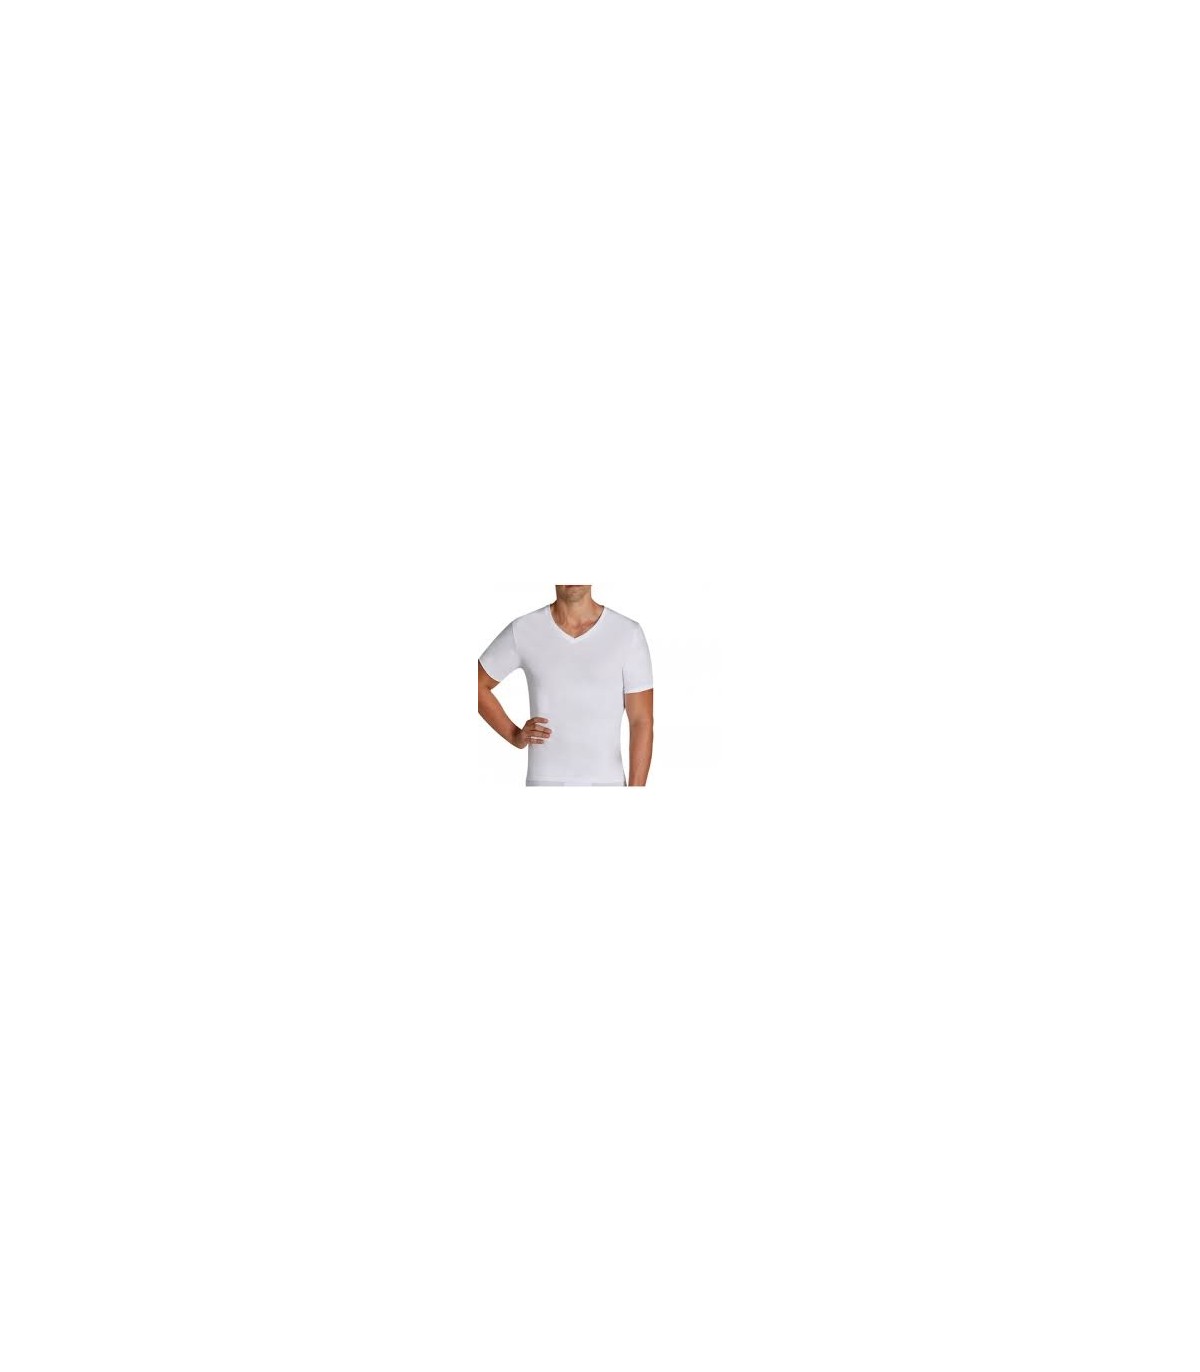 Camiseta niño manga corta interior Fabio 8110